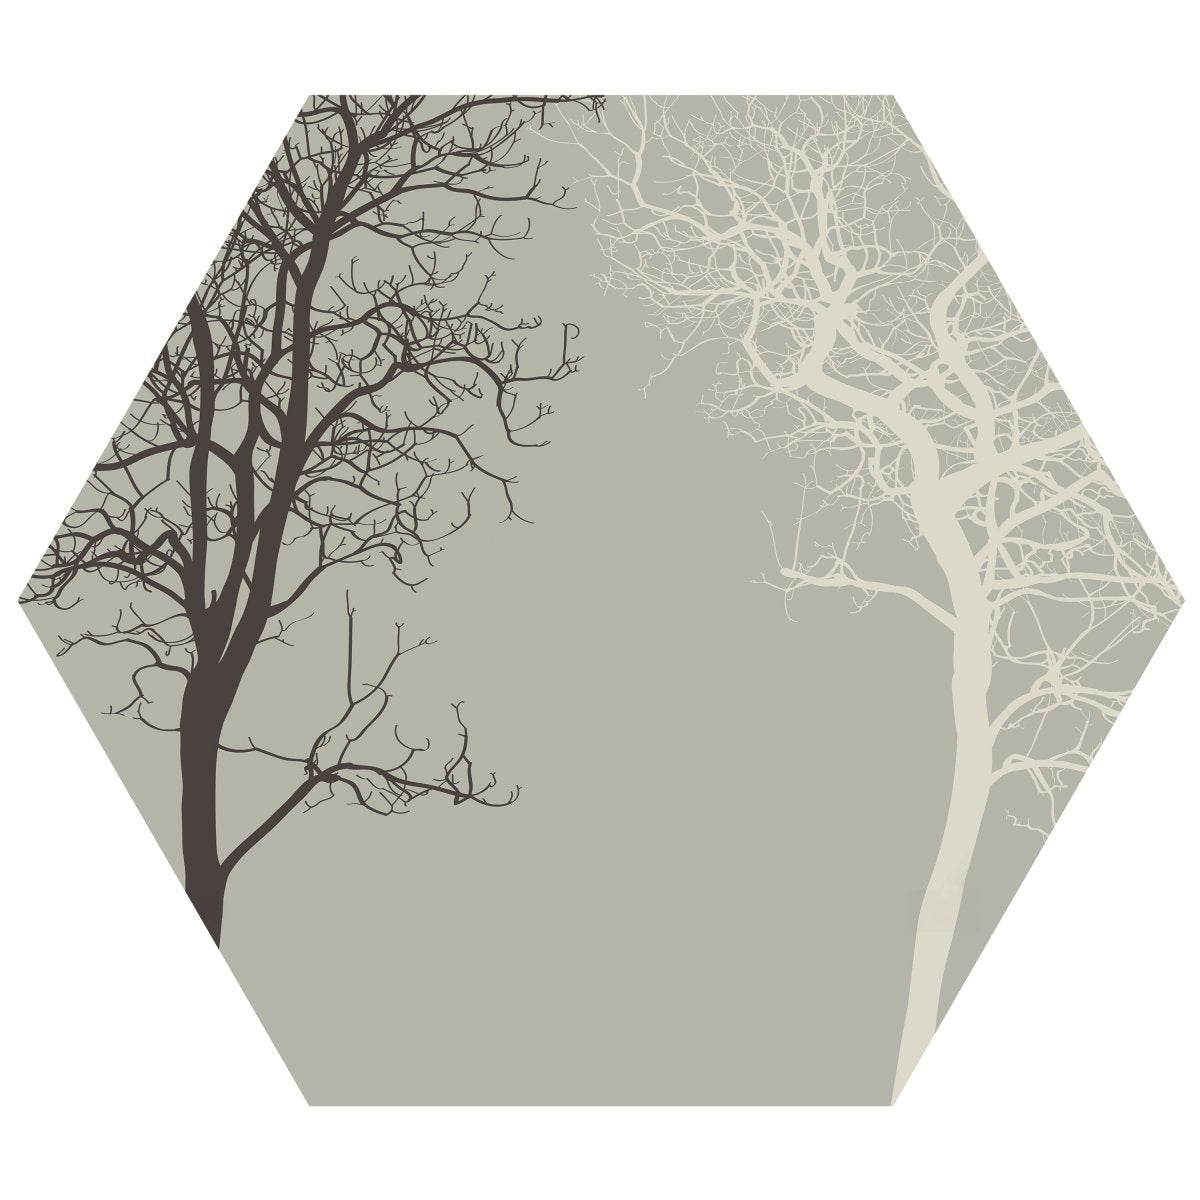 Hexagon-Fototapete Silhouetten von Bäumen M0015 - Bild 11